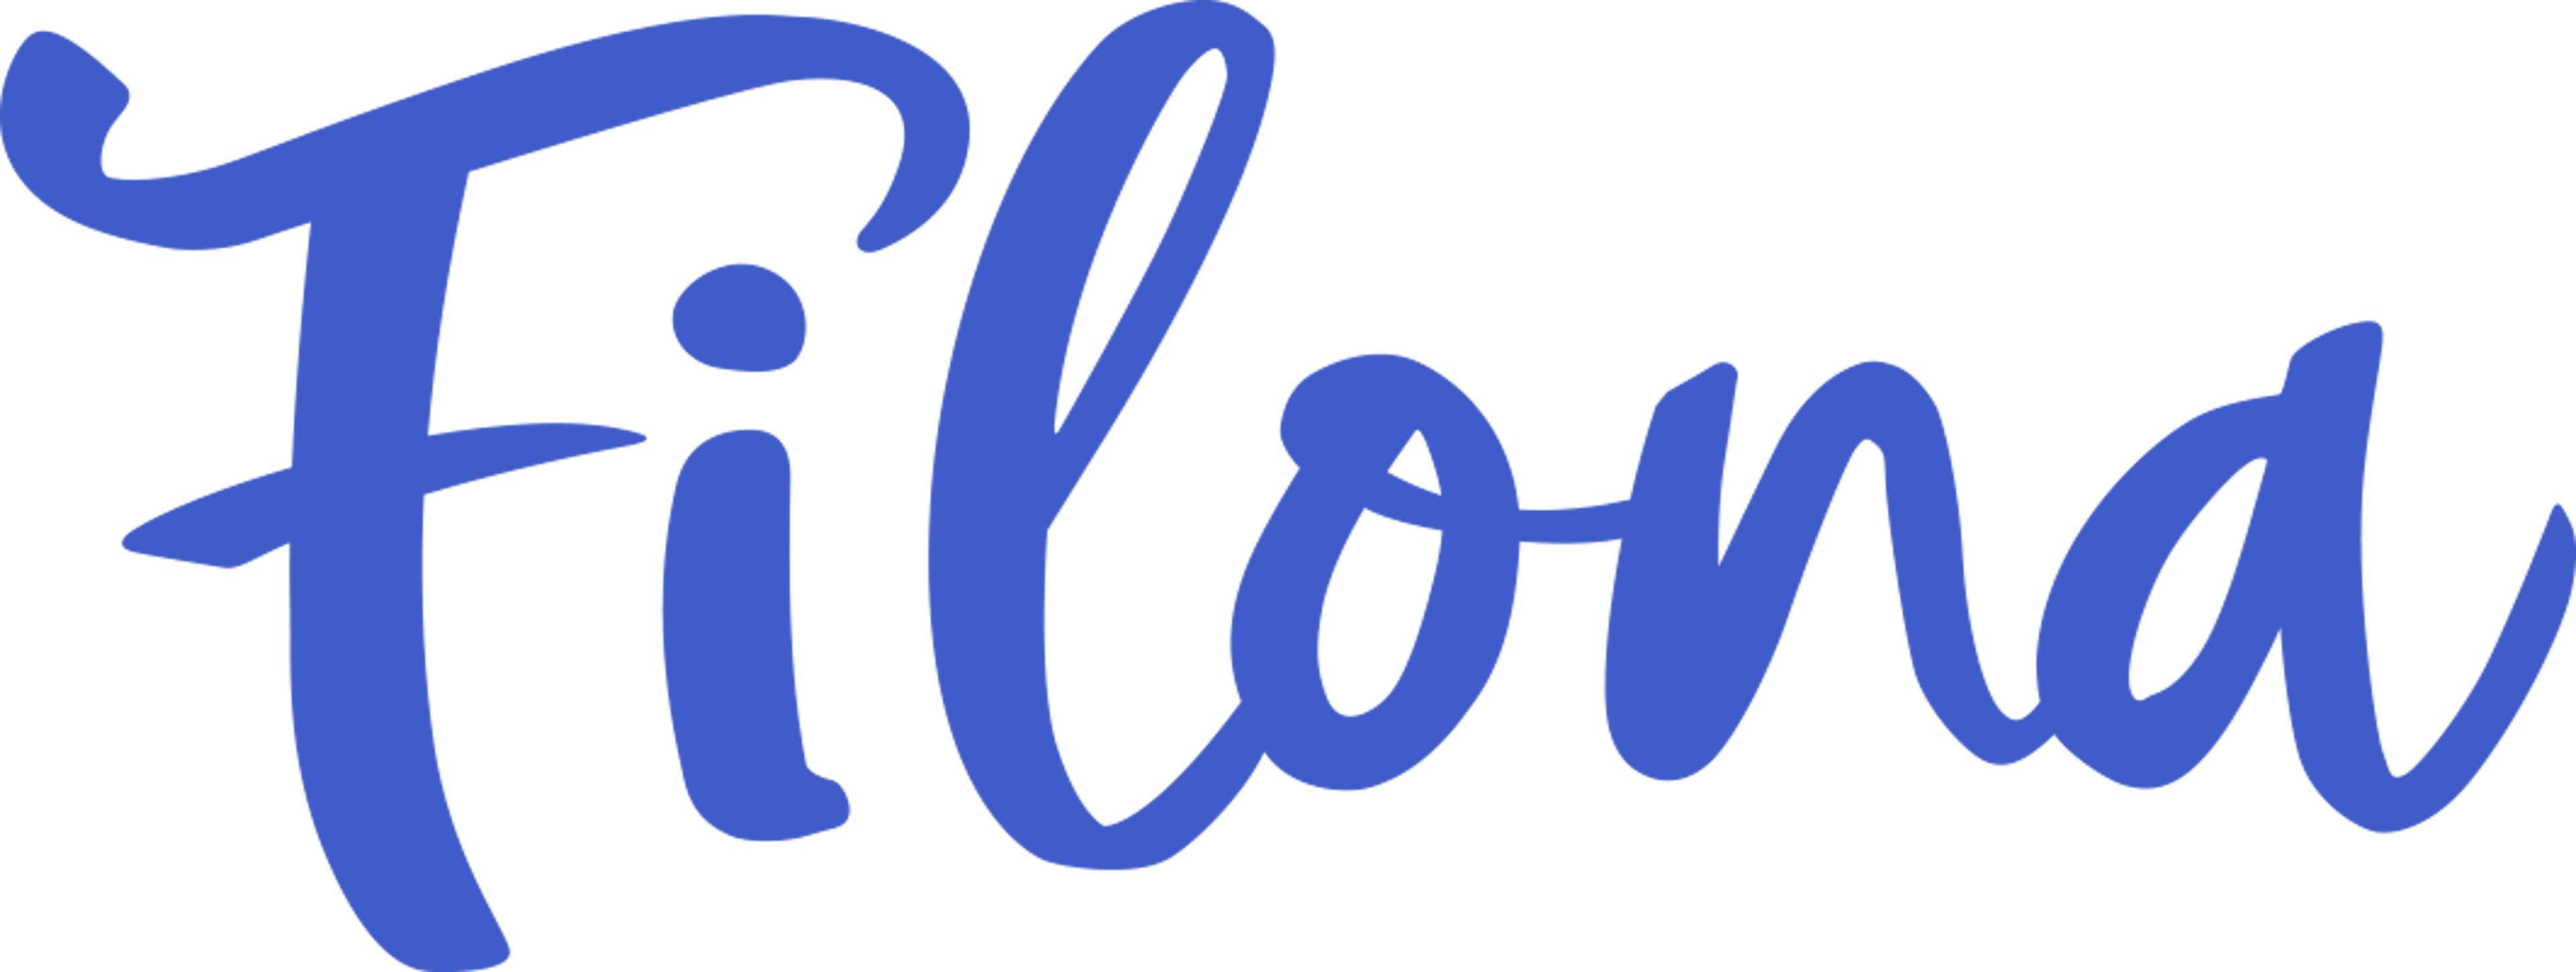 Filona Logo